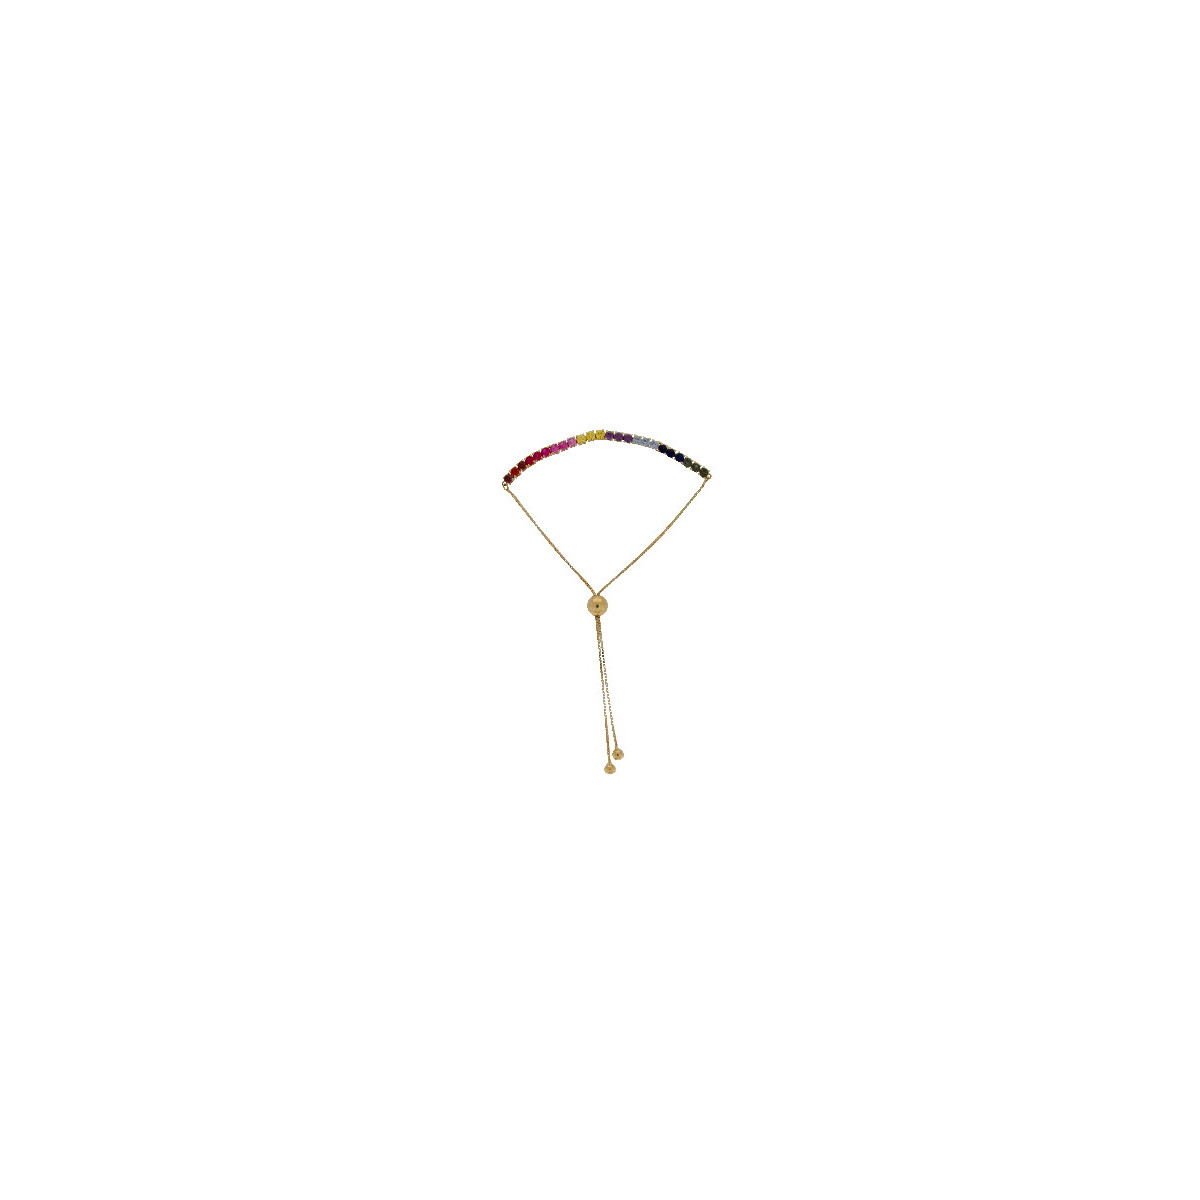 Pulsera Tenis de Oro Circones de Colores - RM-8155 6,90 +15$